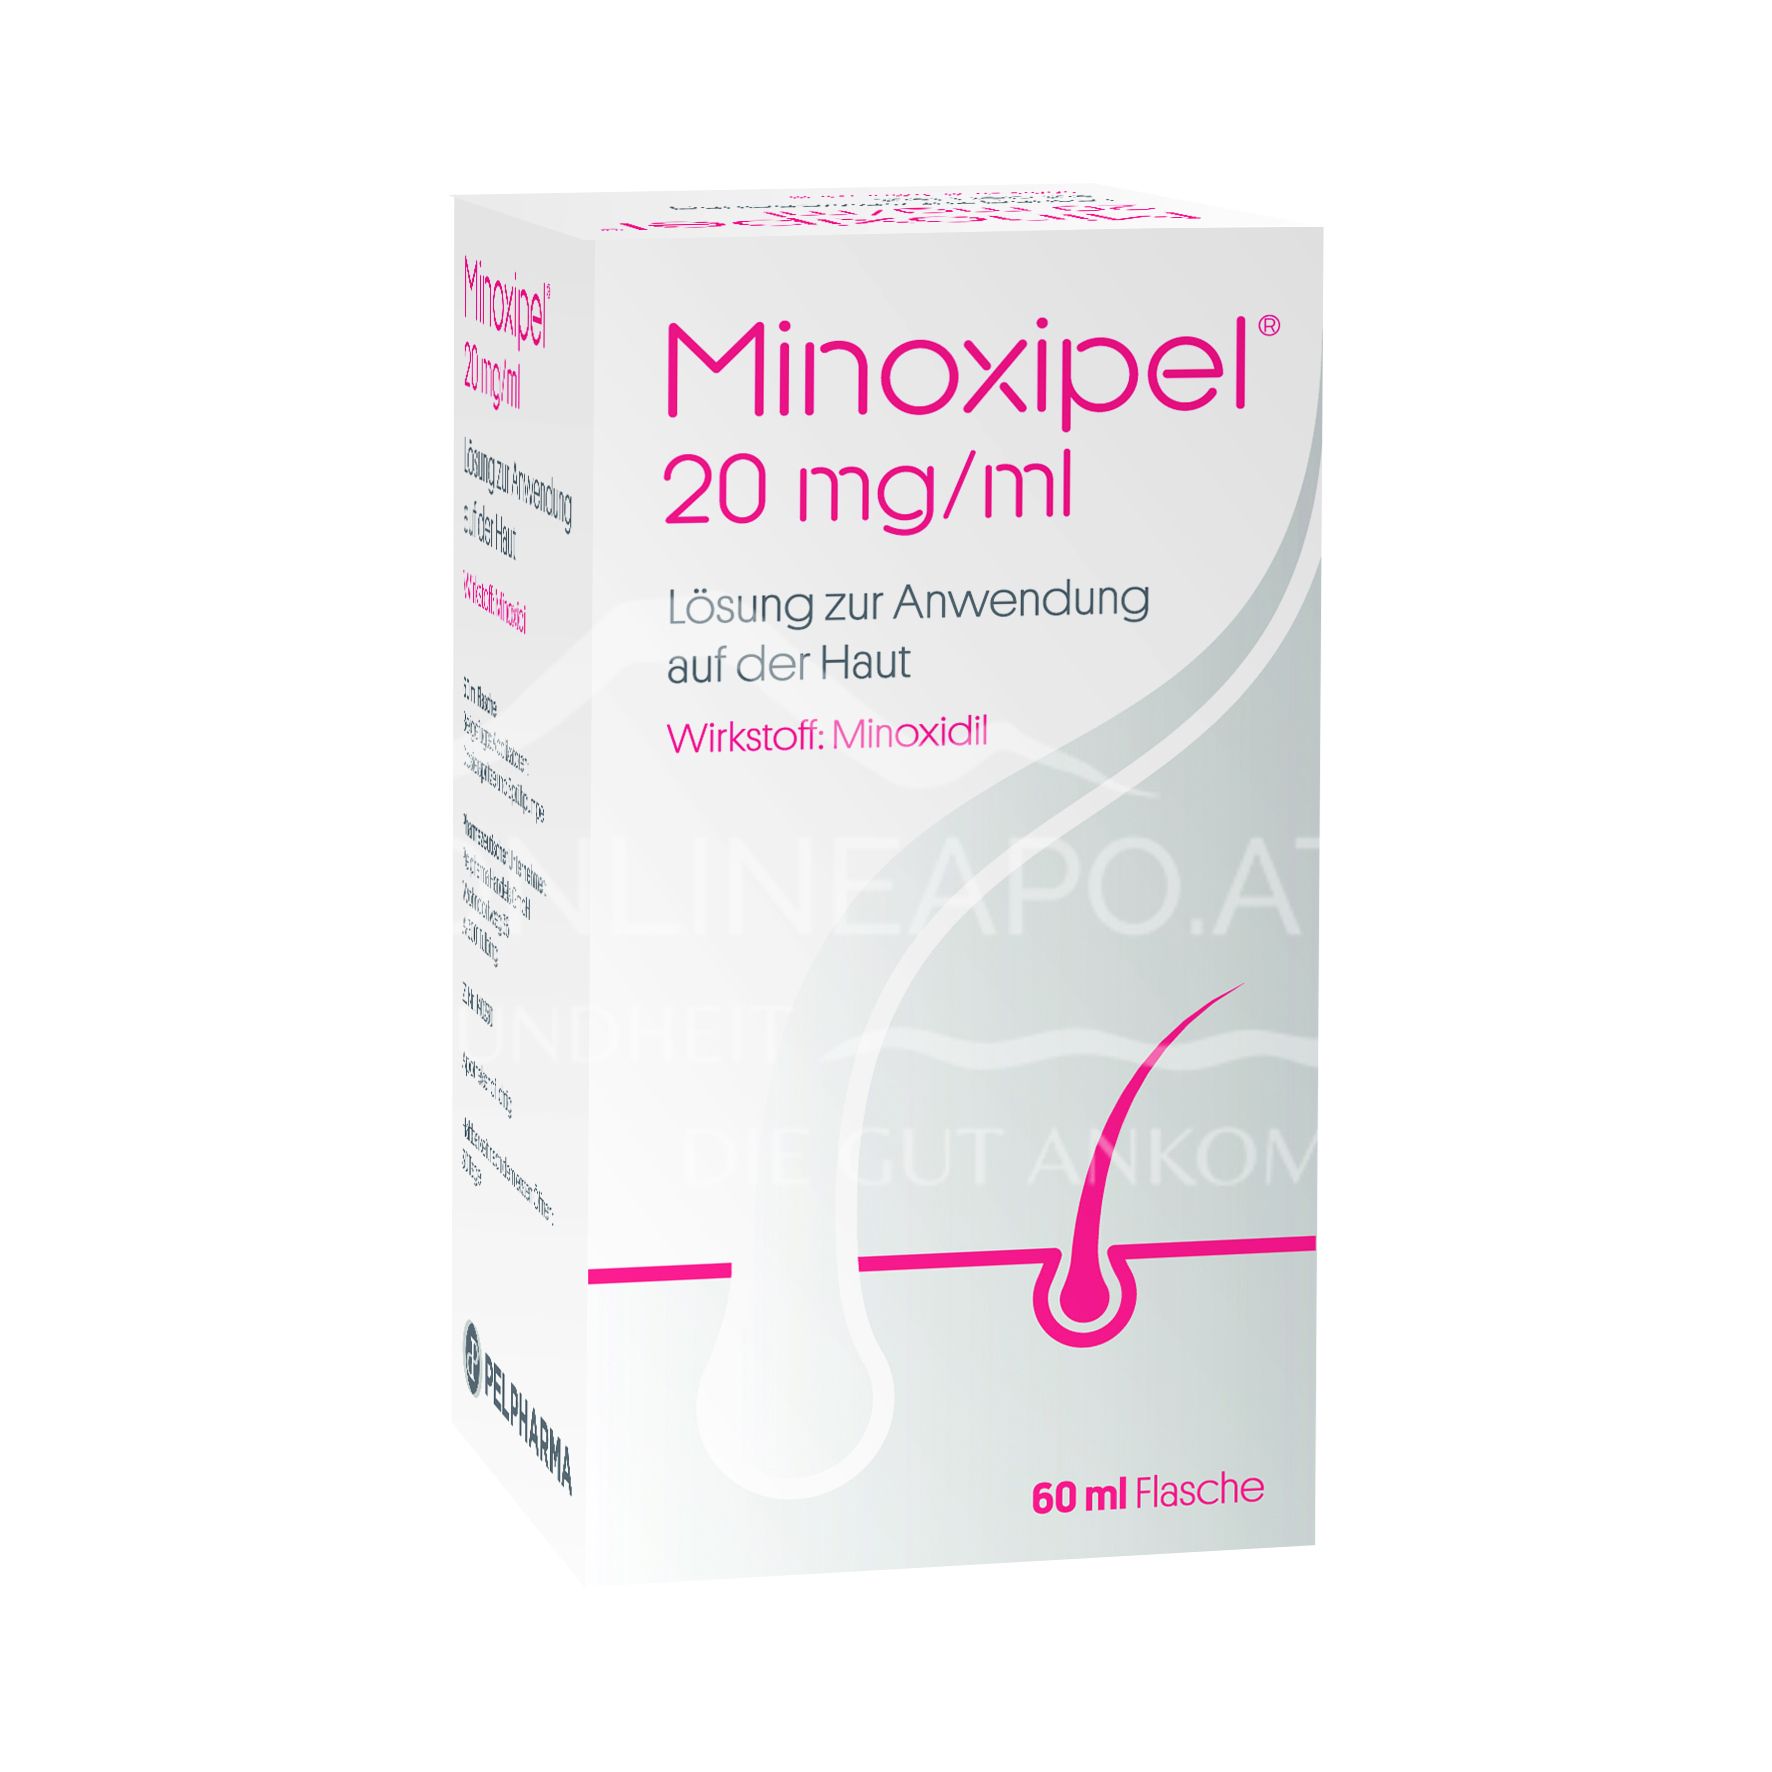 Minoxipel 20 mg/ml Lösung zur Anwendung auf der Haut